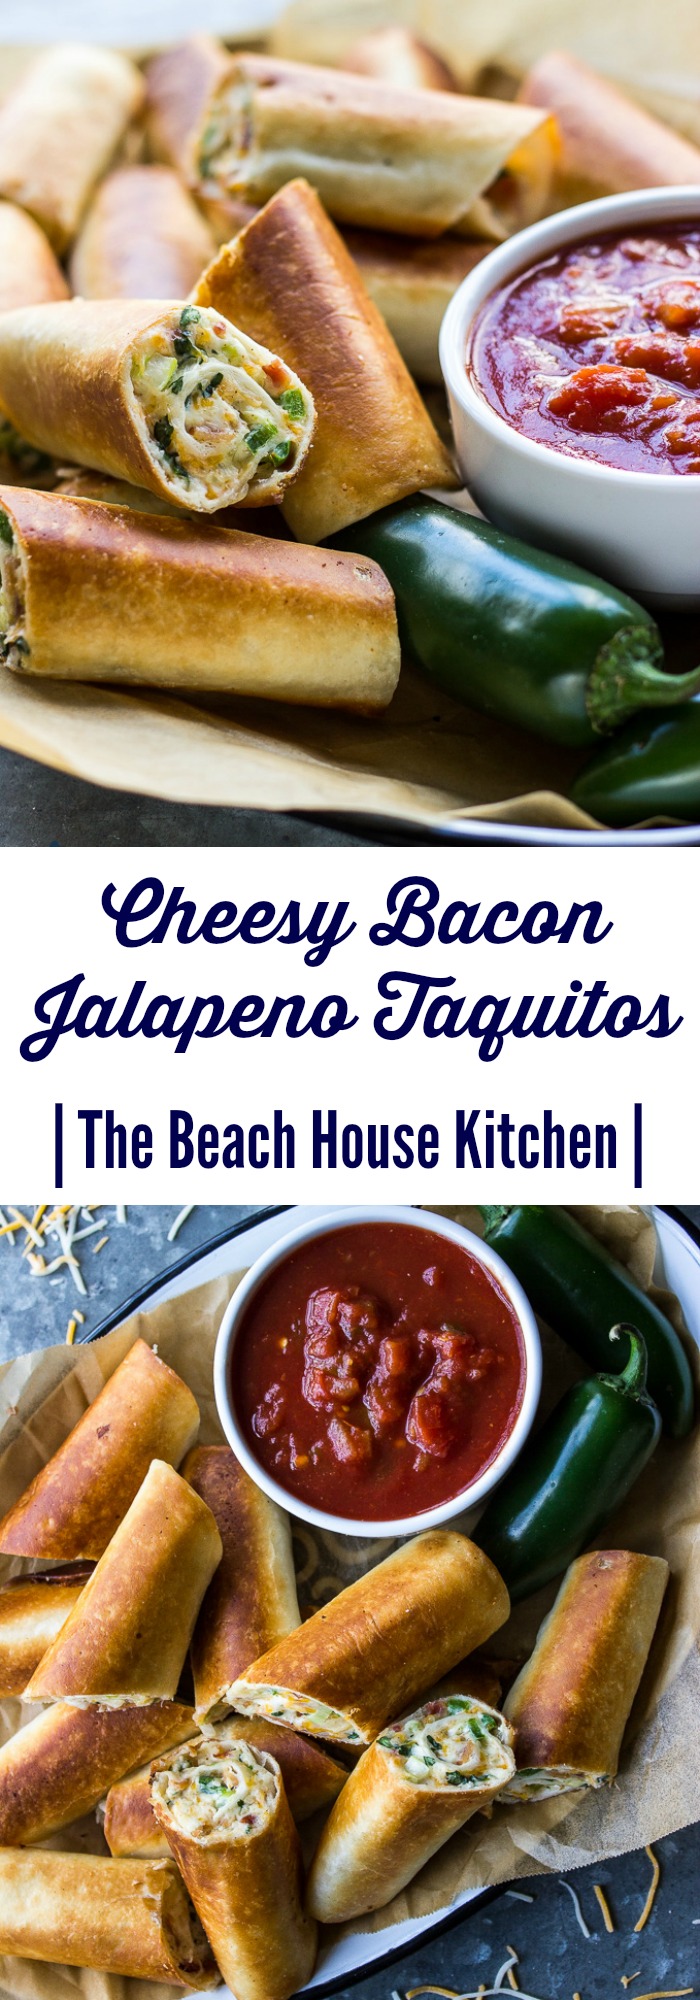 Cheesy Bacon Jalapeño Taquitos